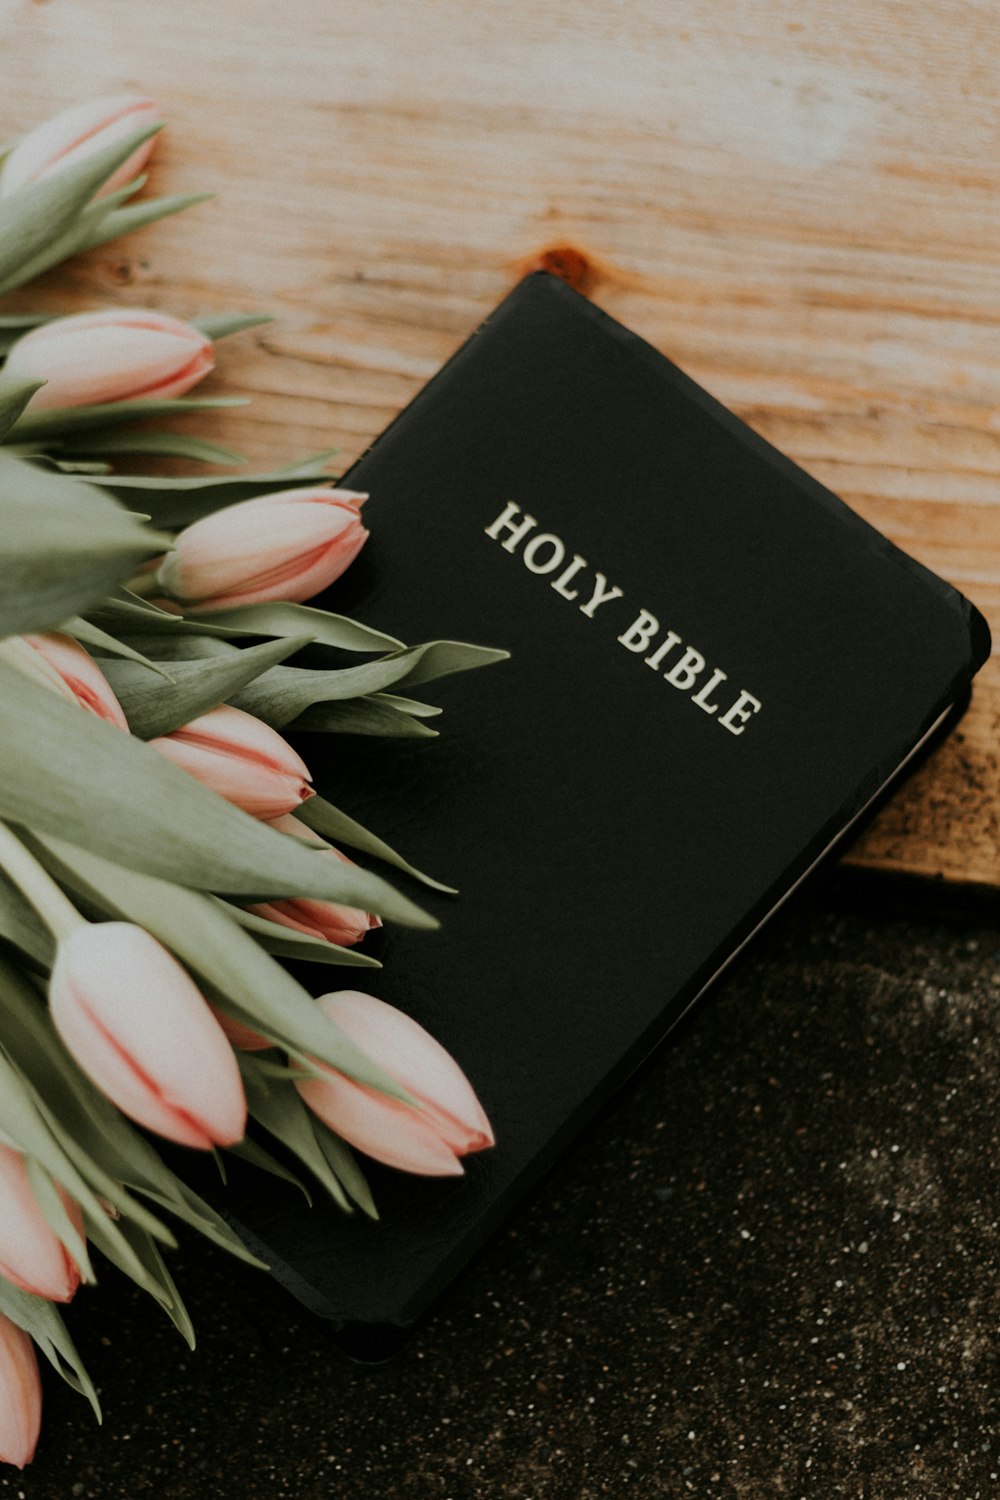 Santa Biblia bajo tulipanes rosados